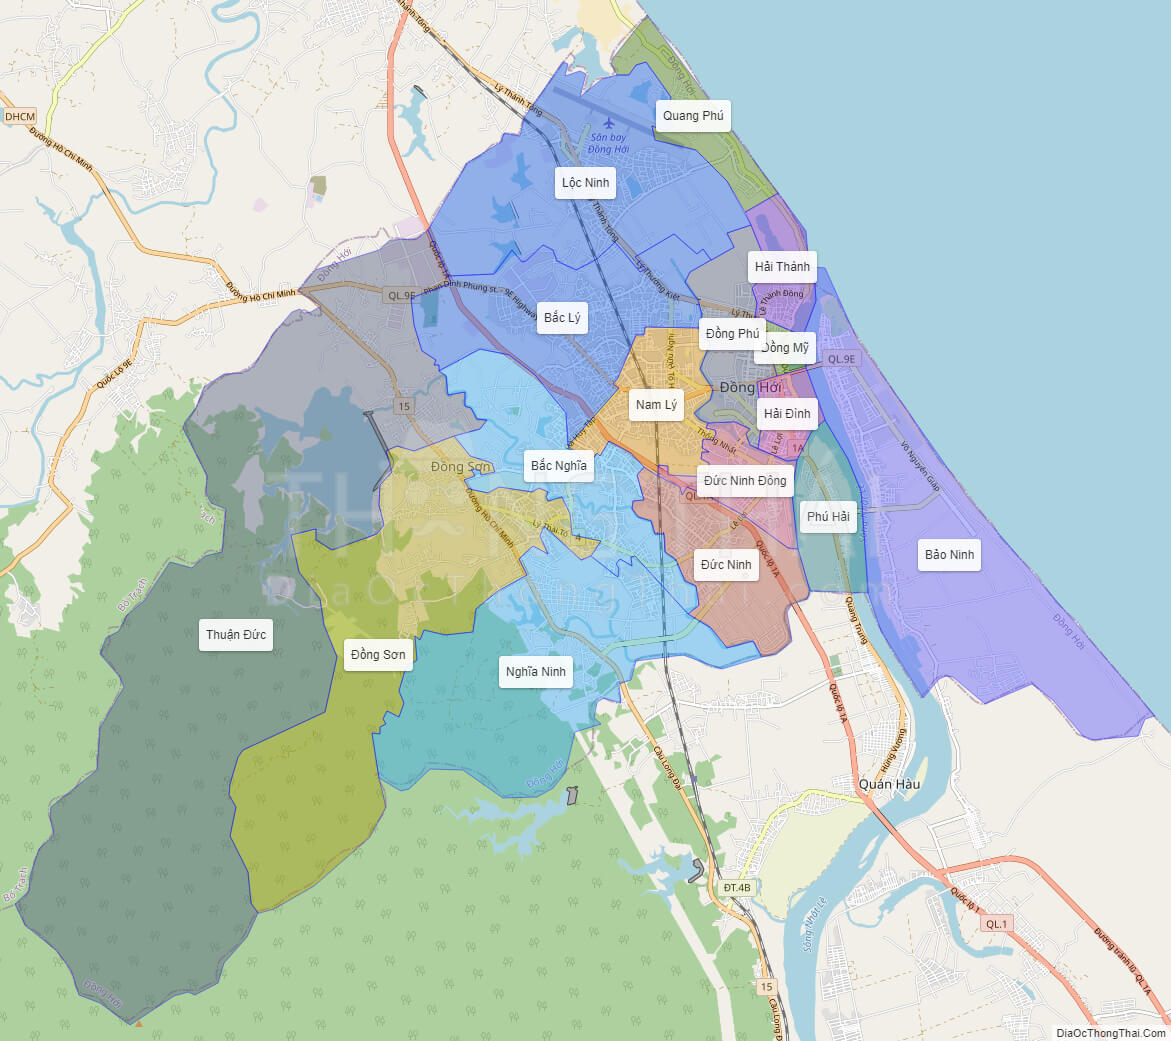 Bản đồ hành chính Quảng Bình đầy đủ thông tin đến năm 2024 sẽ giúp bạn tìm hiểu về danh lam thắng cảnh, lịch sử - văn hoá và phát triển kinh tế của tỉnh. Hãy cùng đến và tham quan để khám phá vẻ đẹp của Quảng Bình trên bản đồ này.